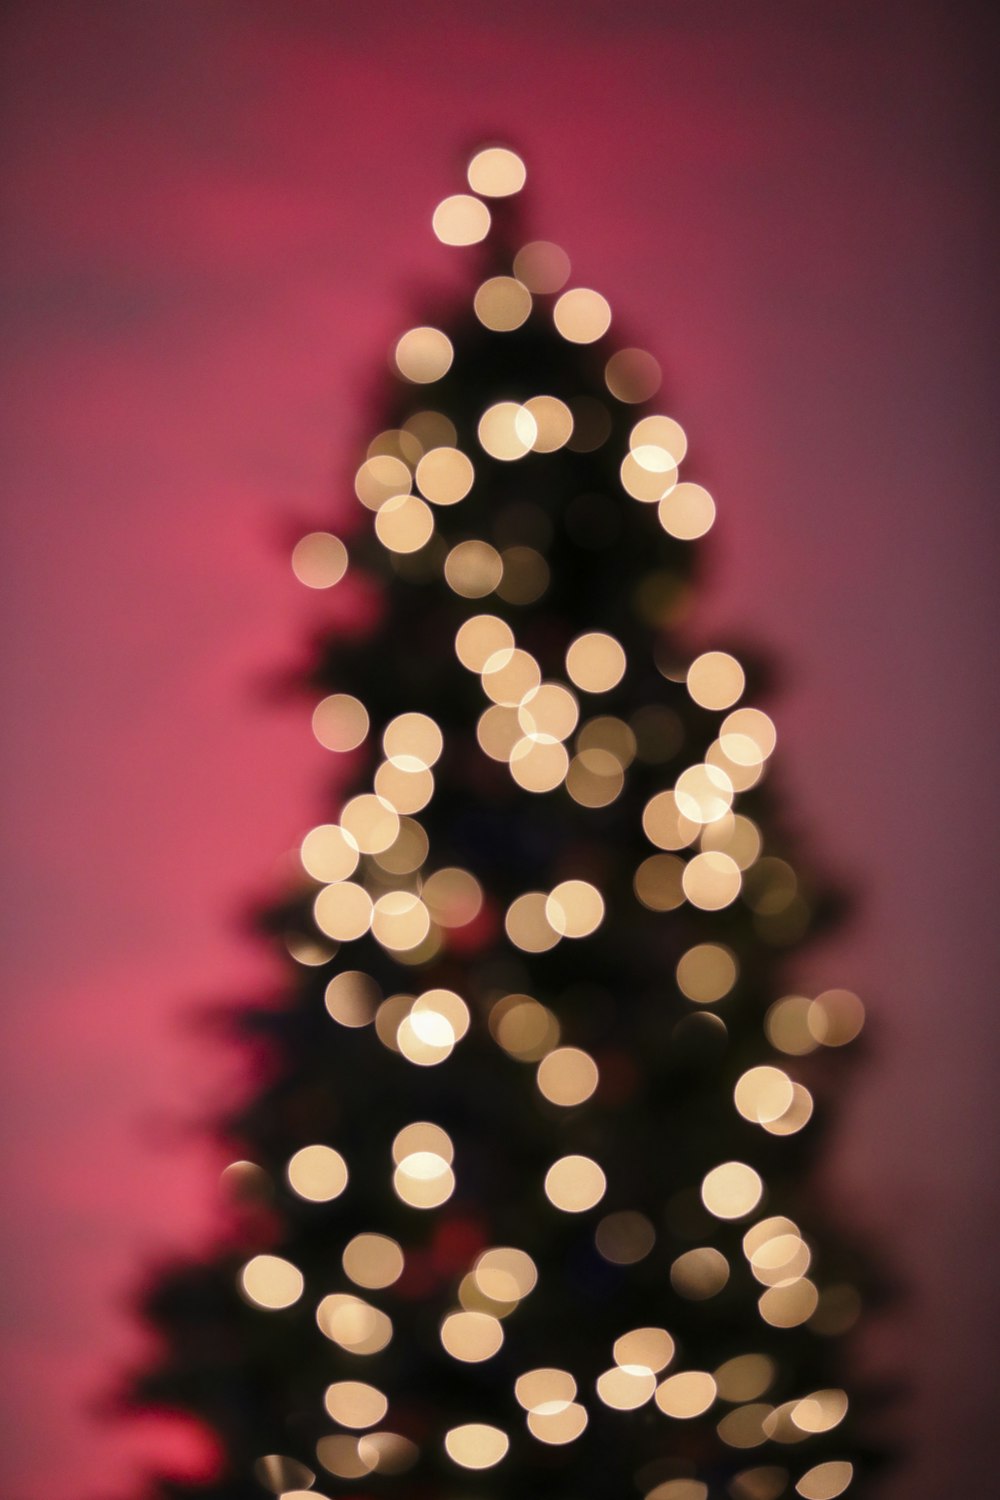 불이 켜진 크리스마스 트리의 흐릿한 사진